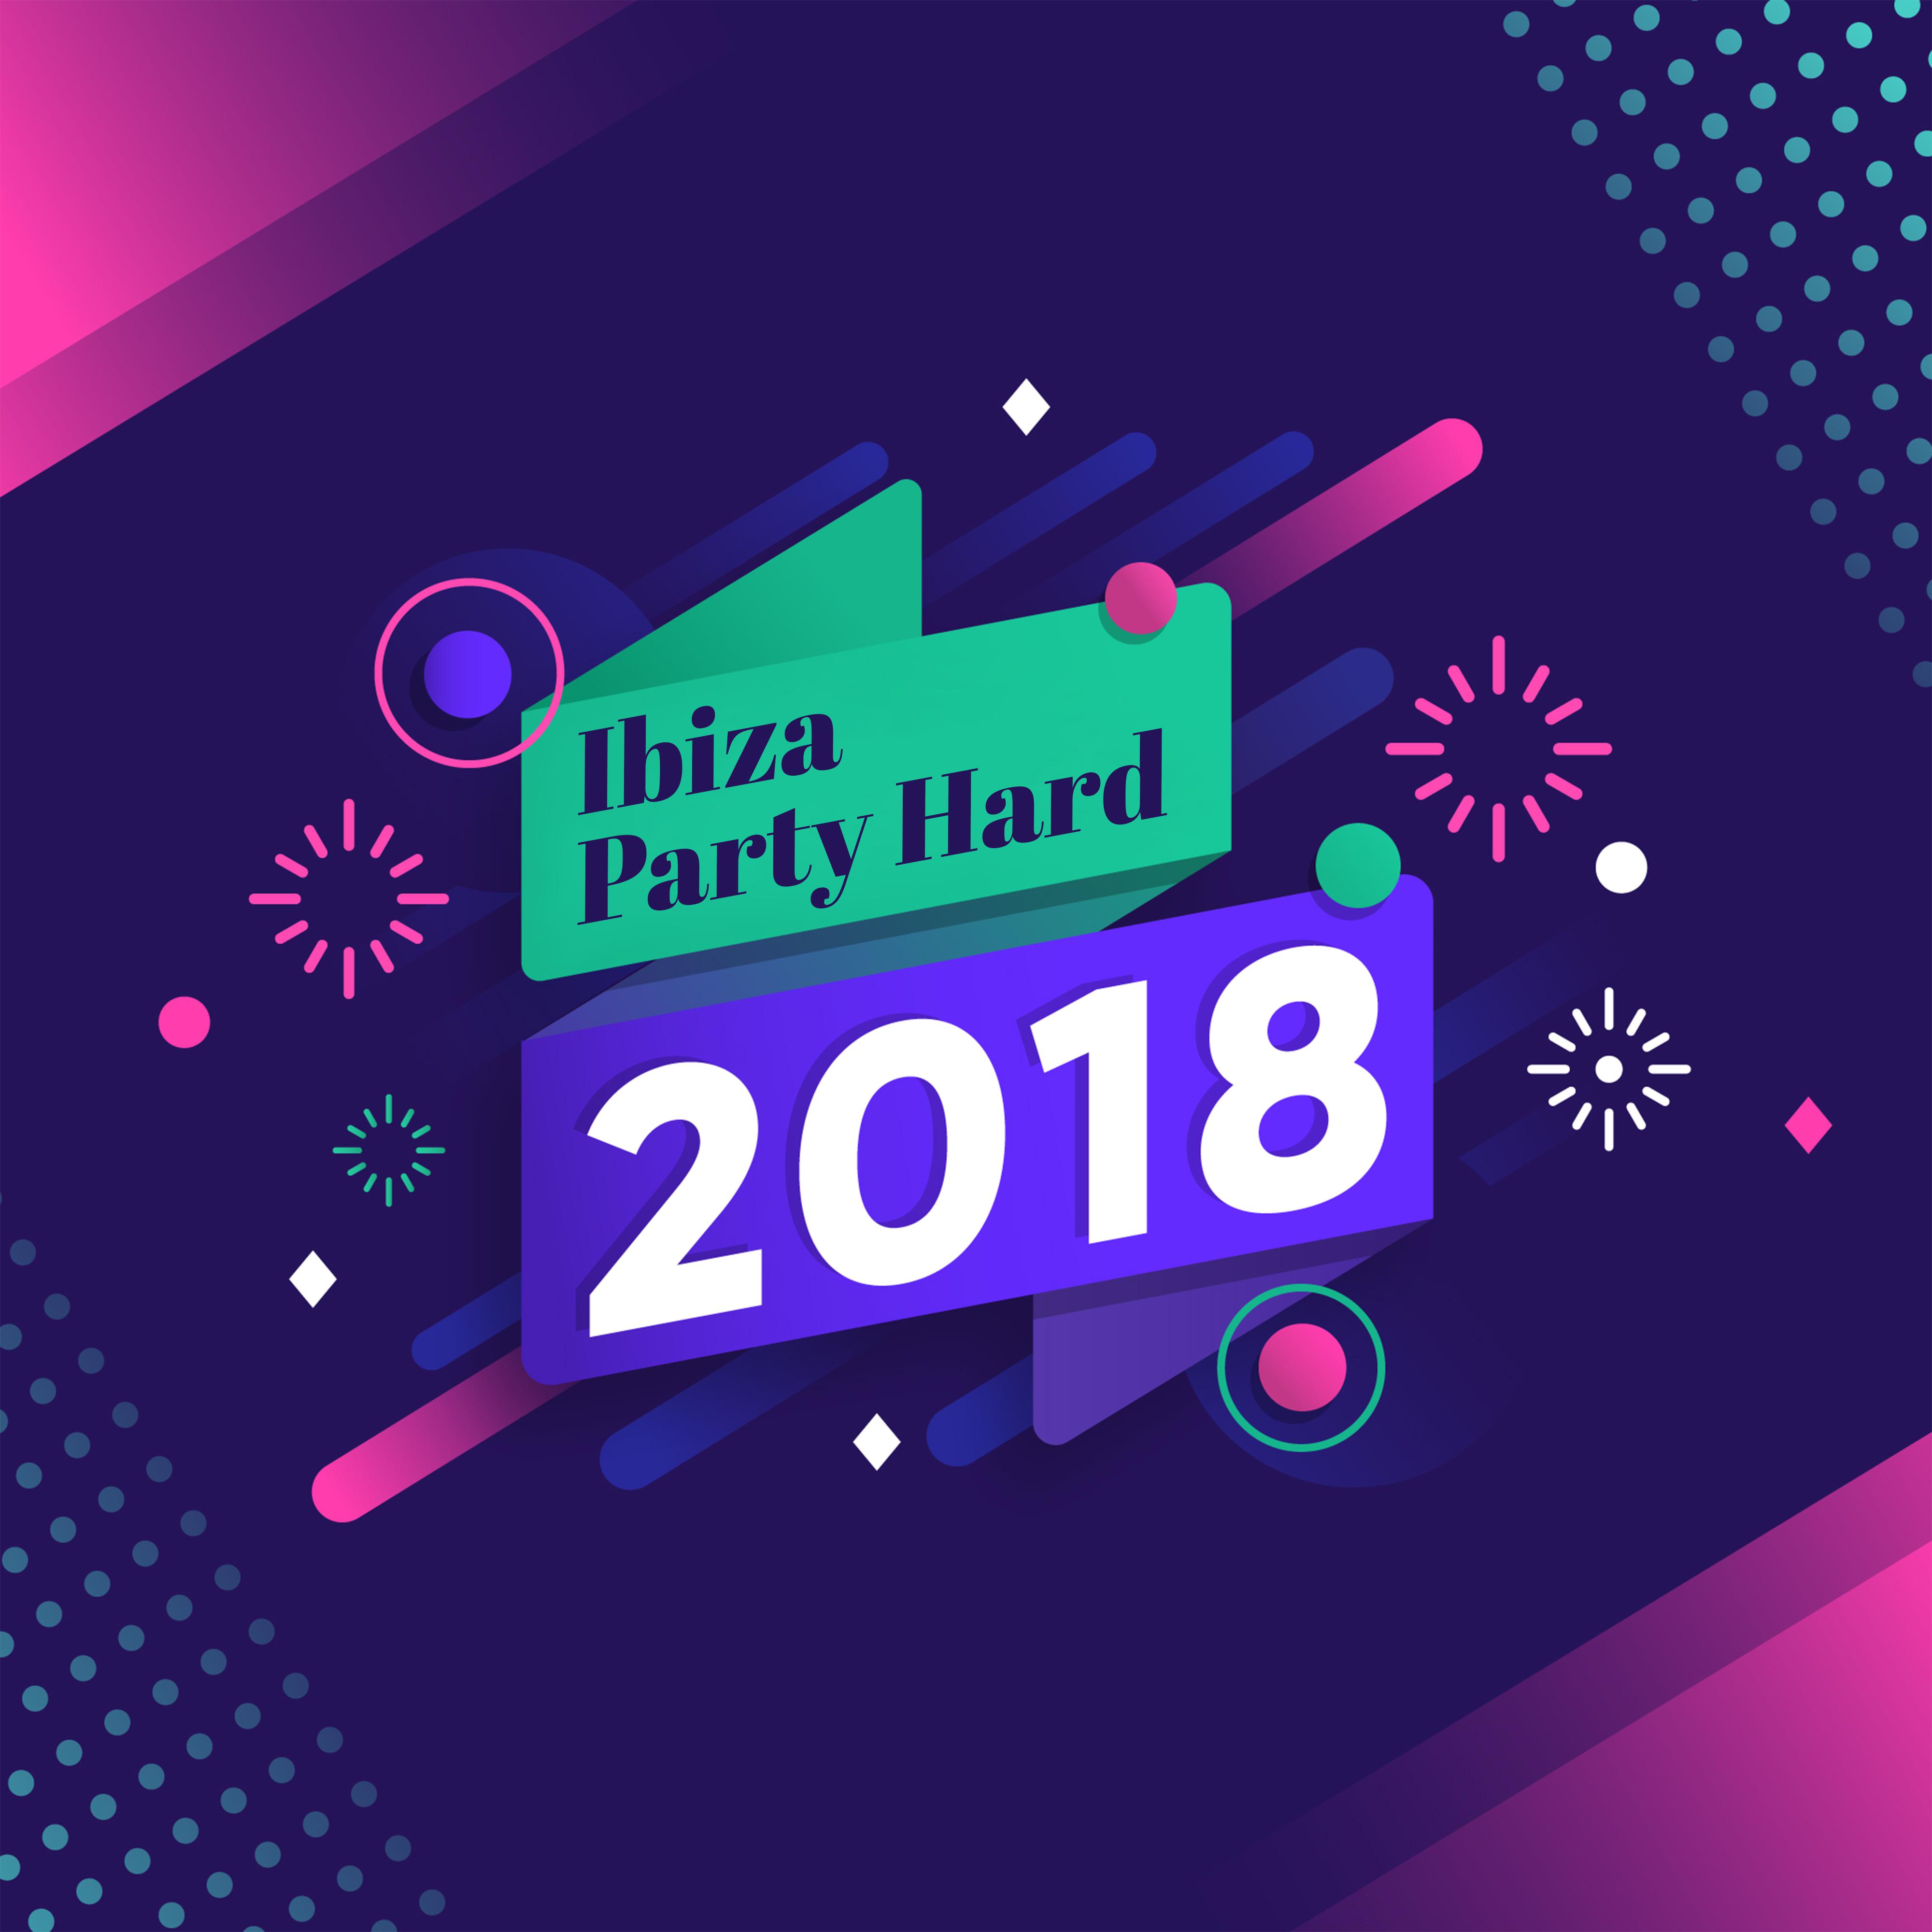 Ibiza Party Hard 2018